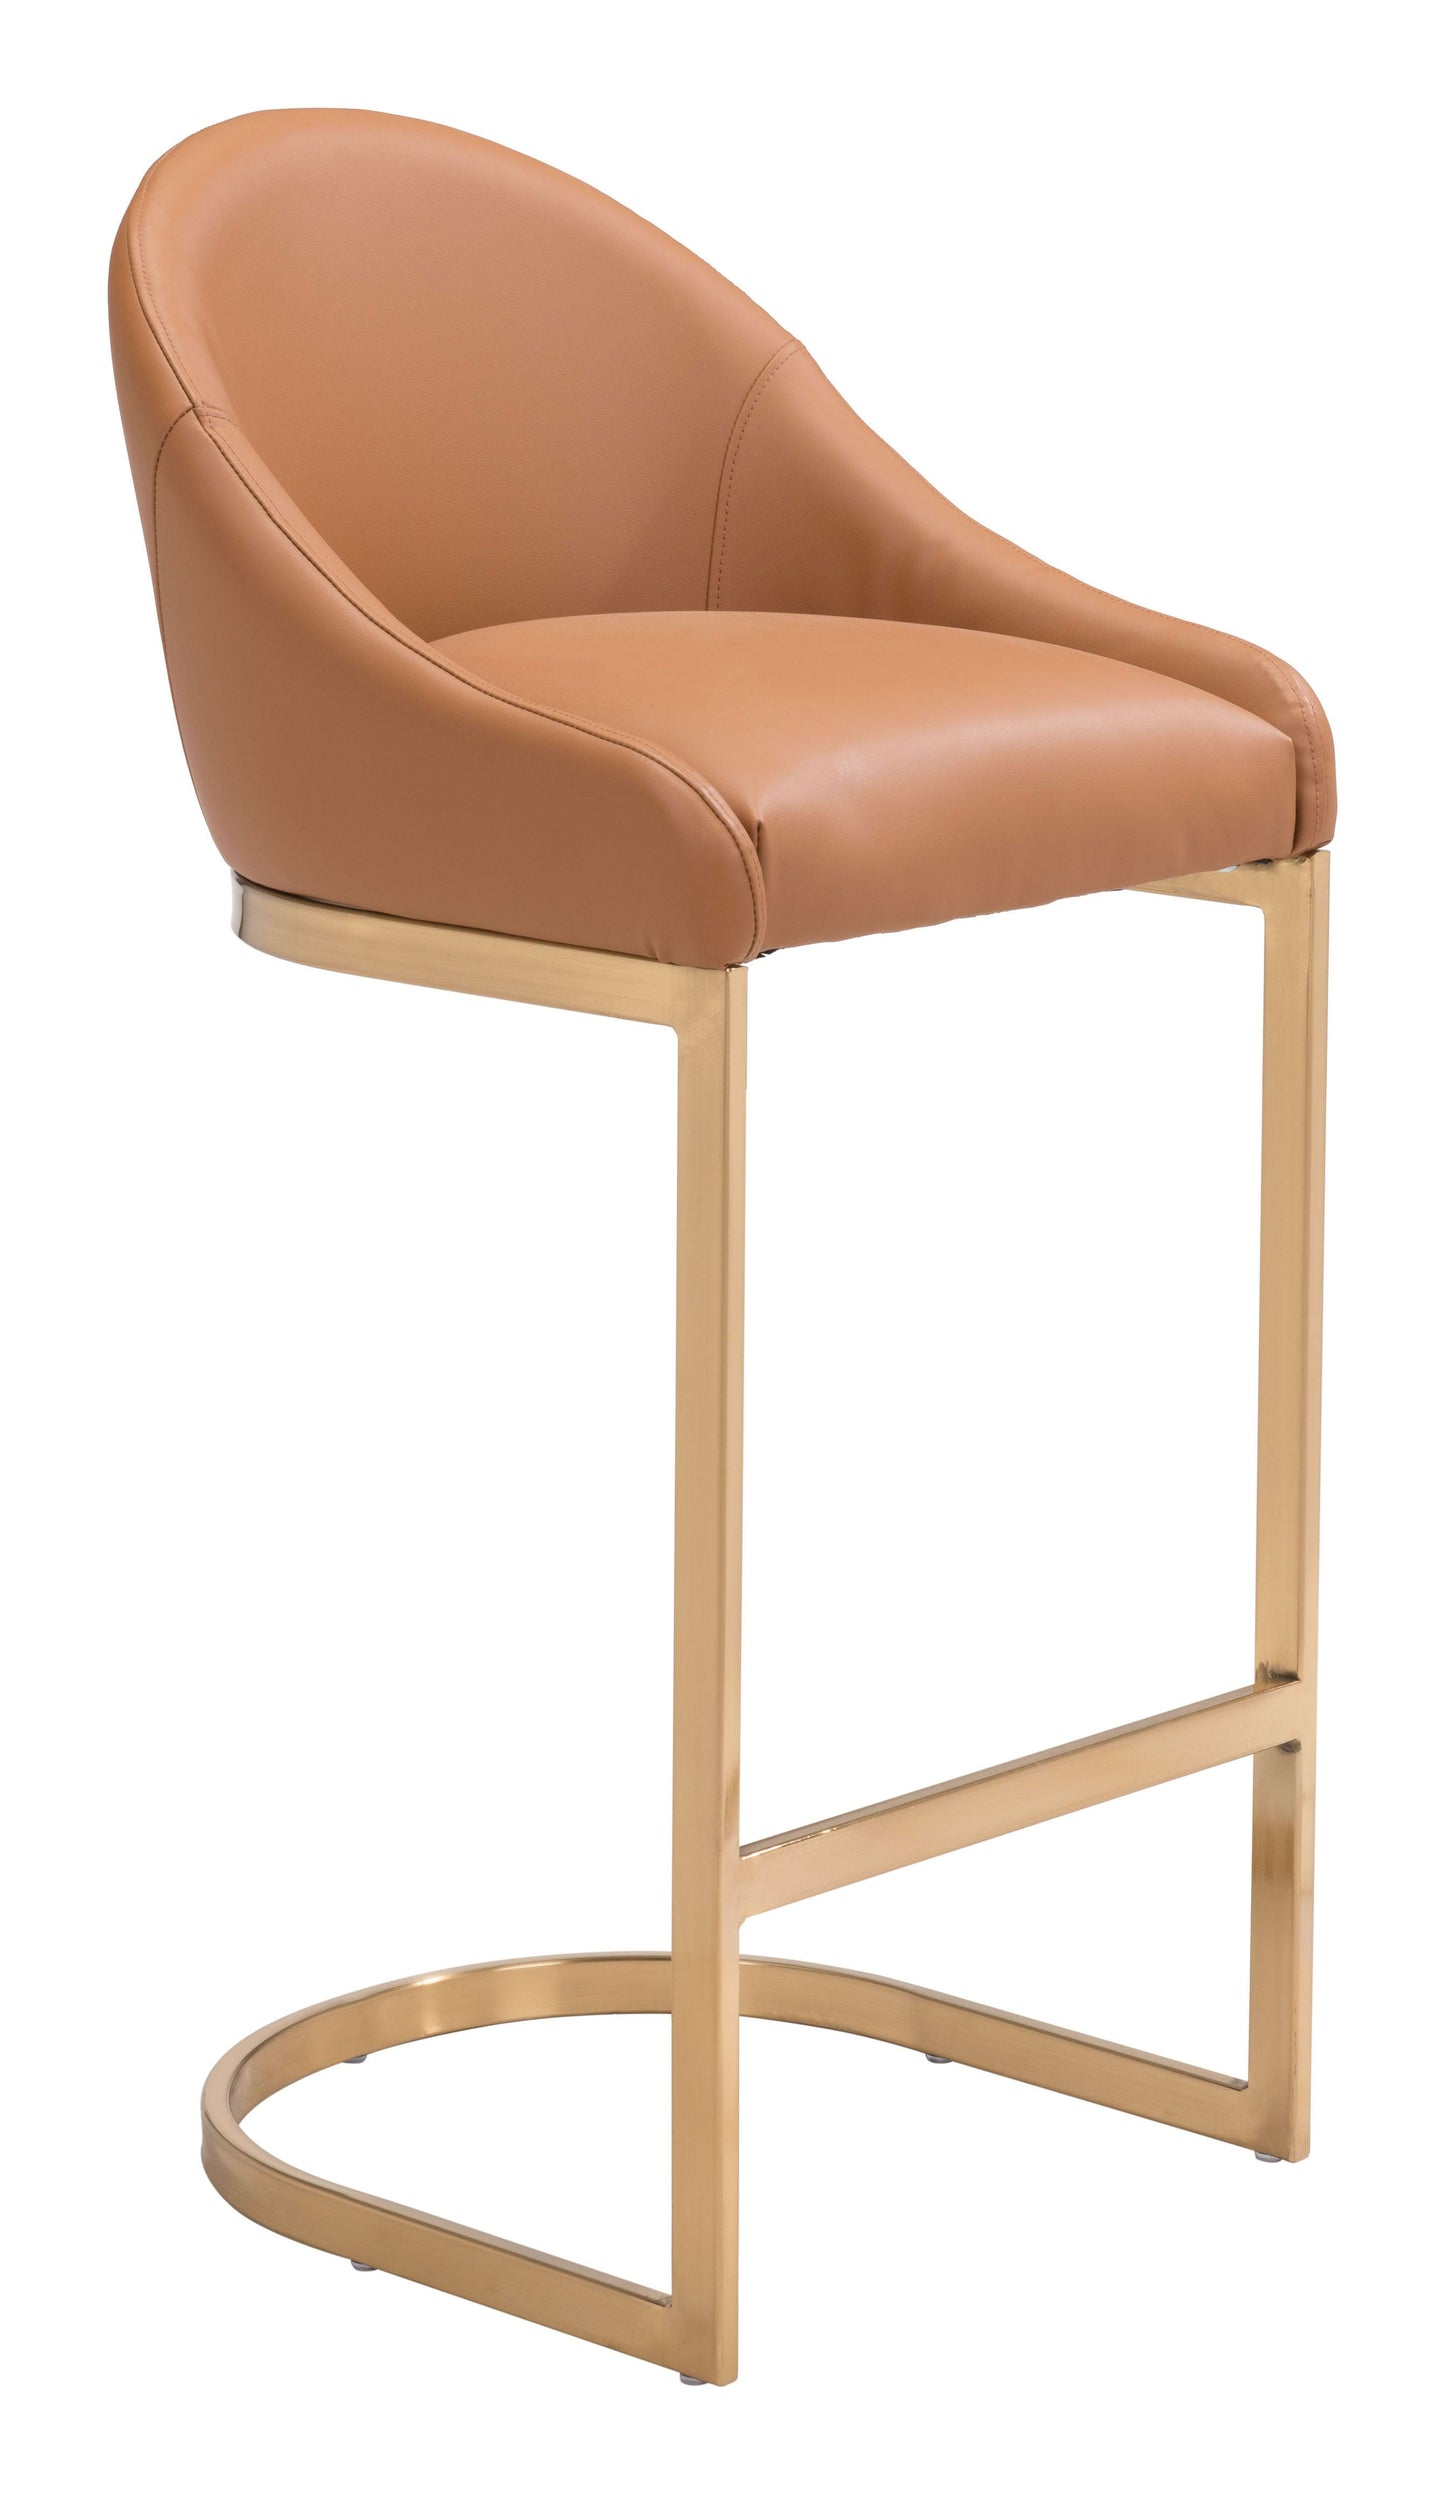 Modern glam bar chair